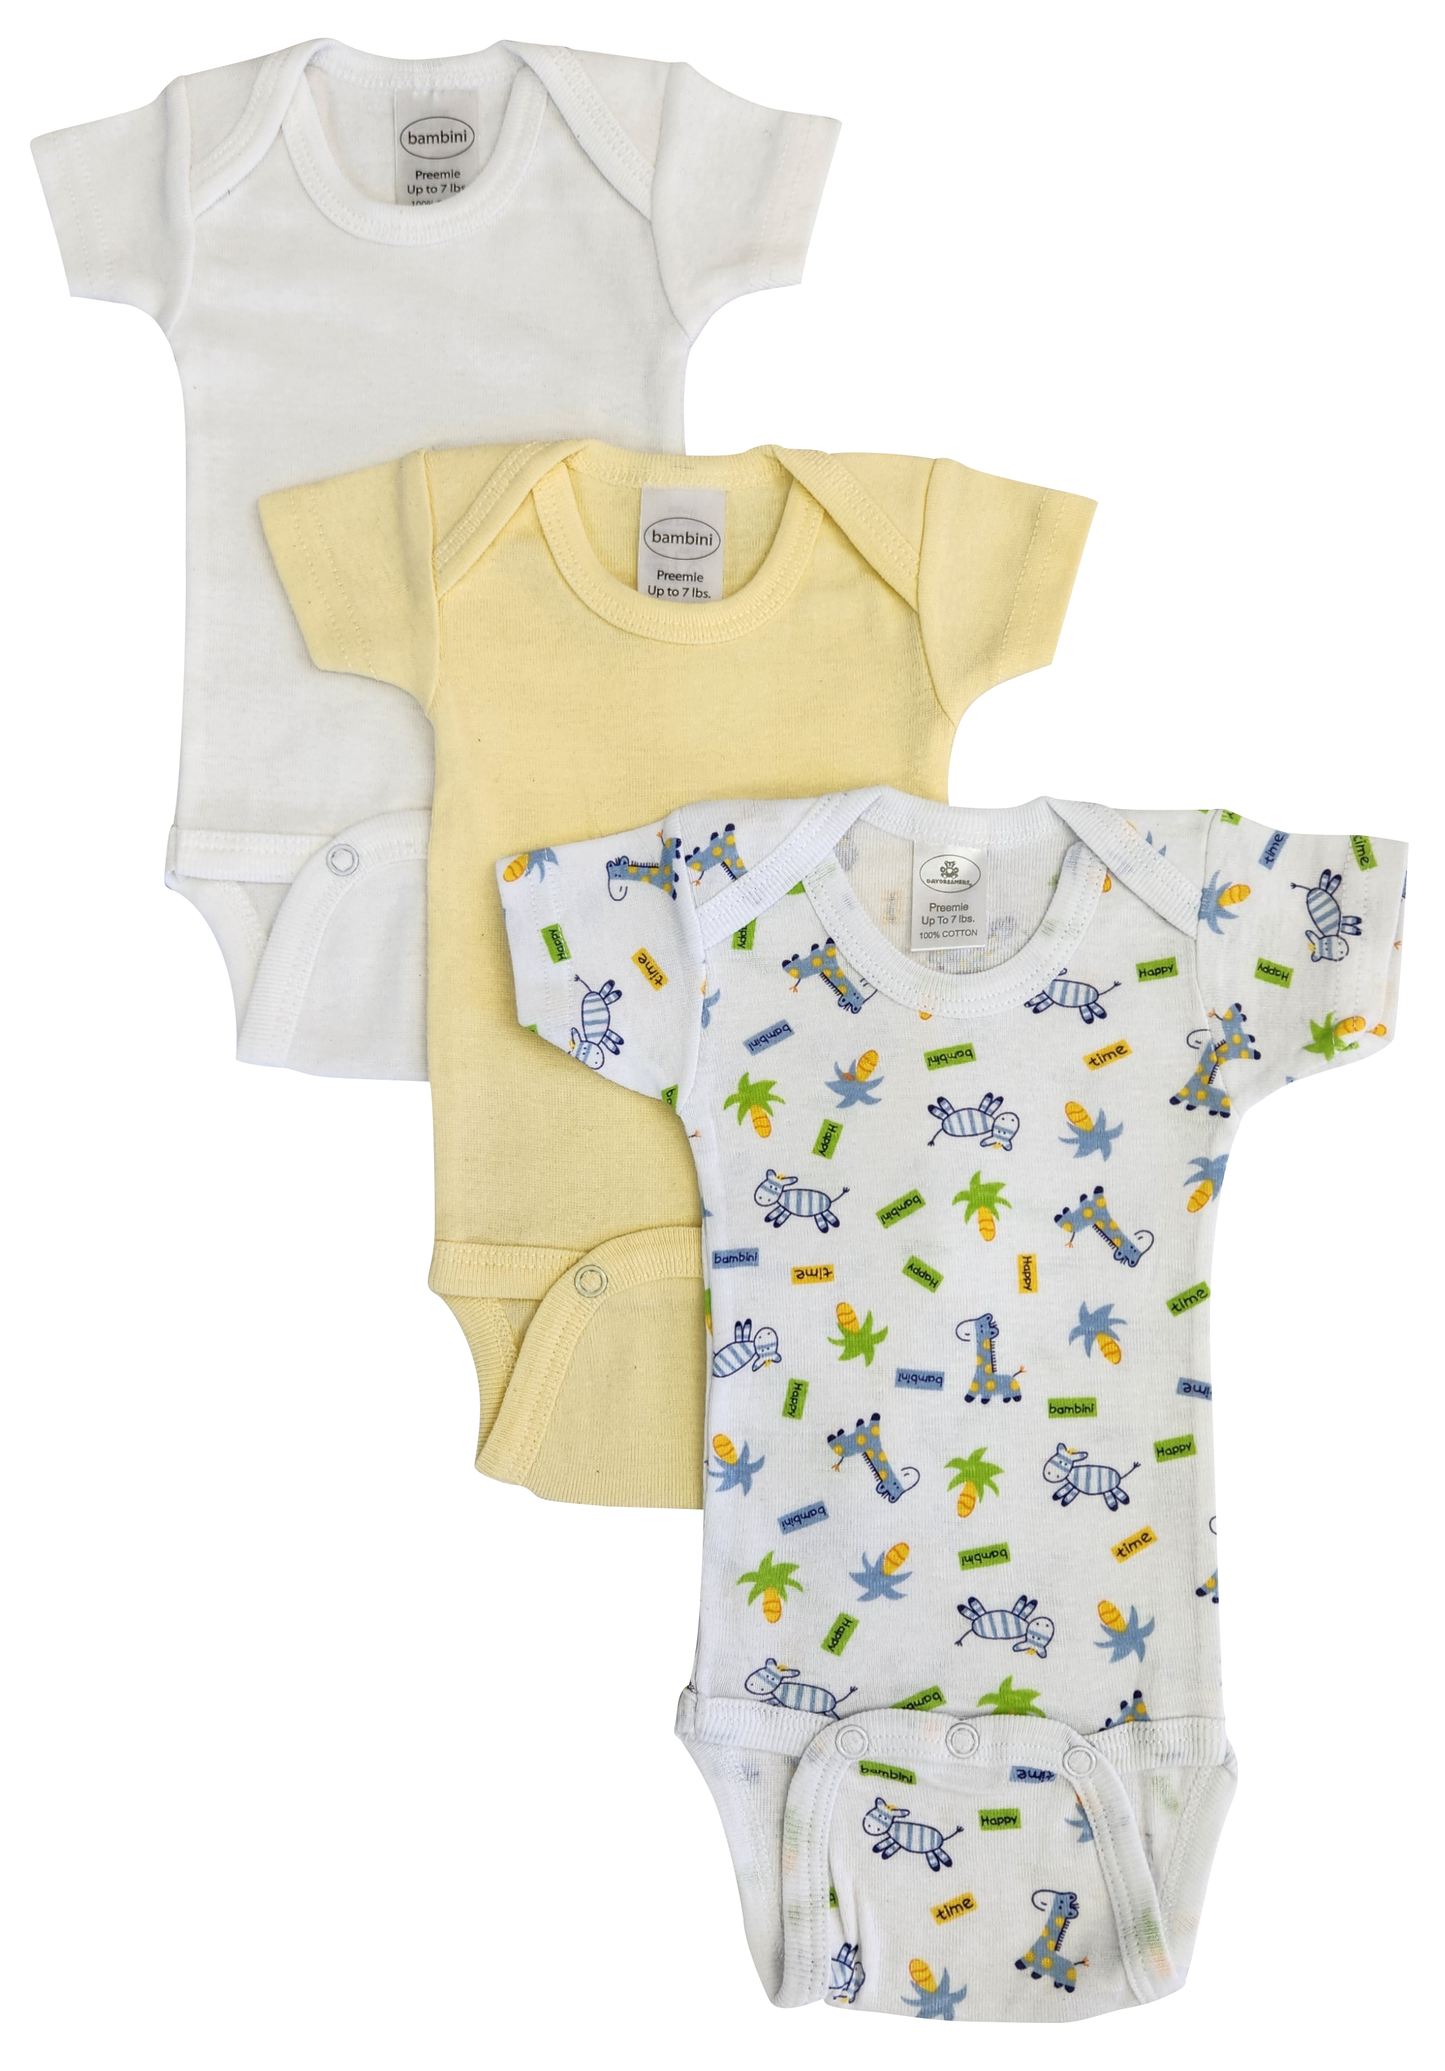 Preemie Printed Short Sleeve Variety Pack